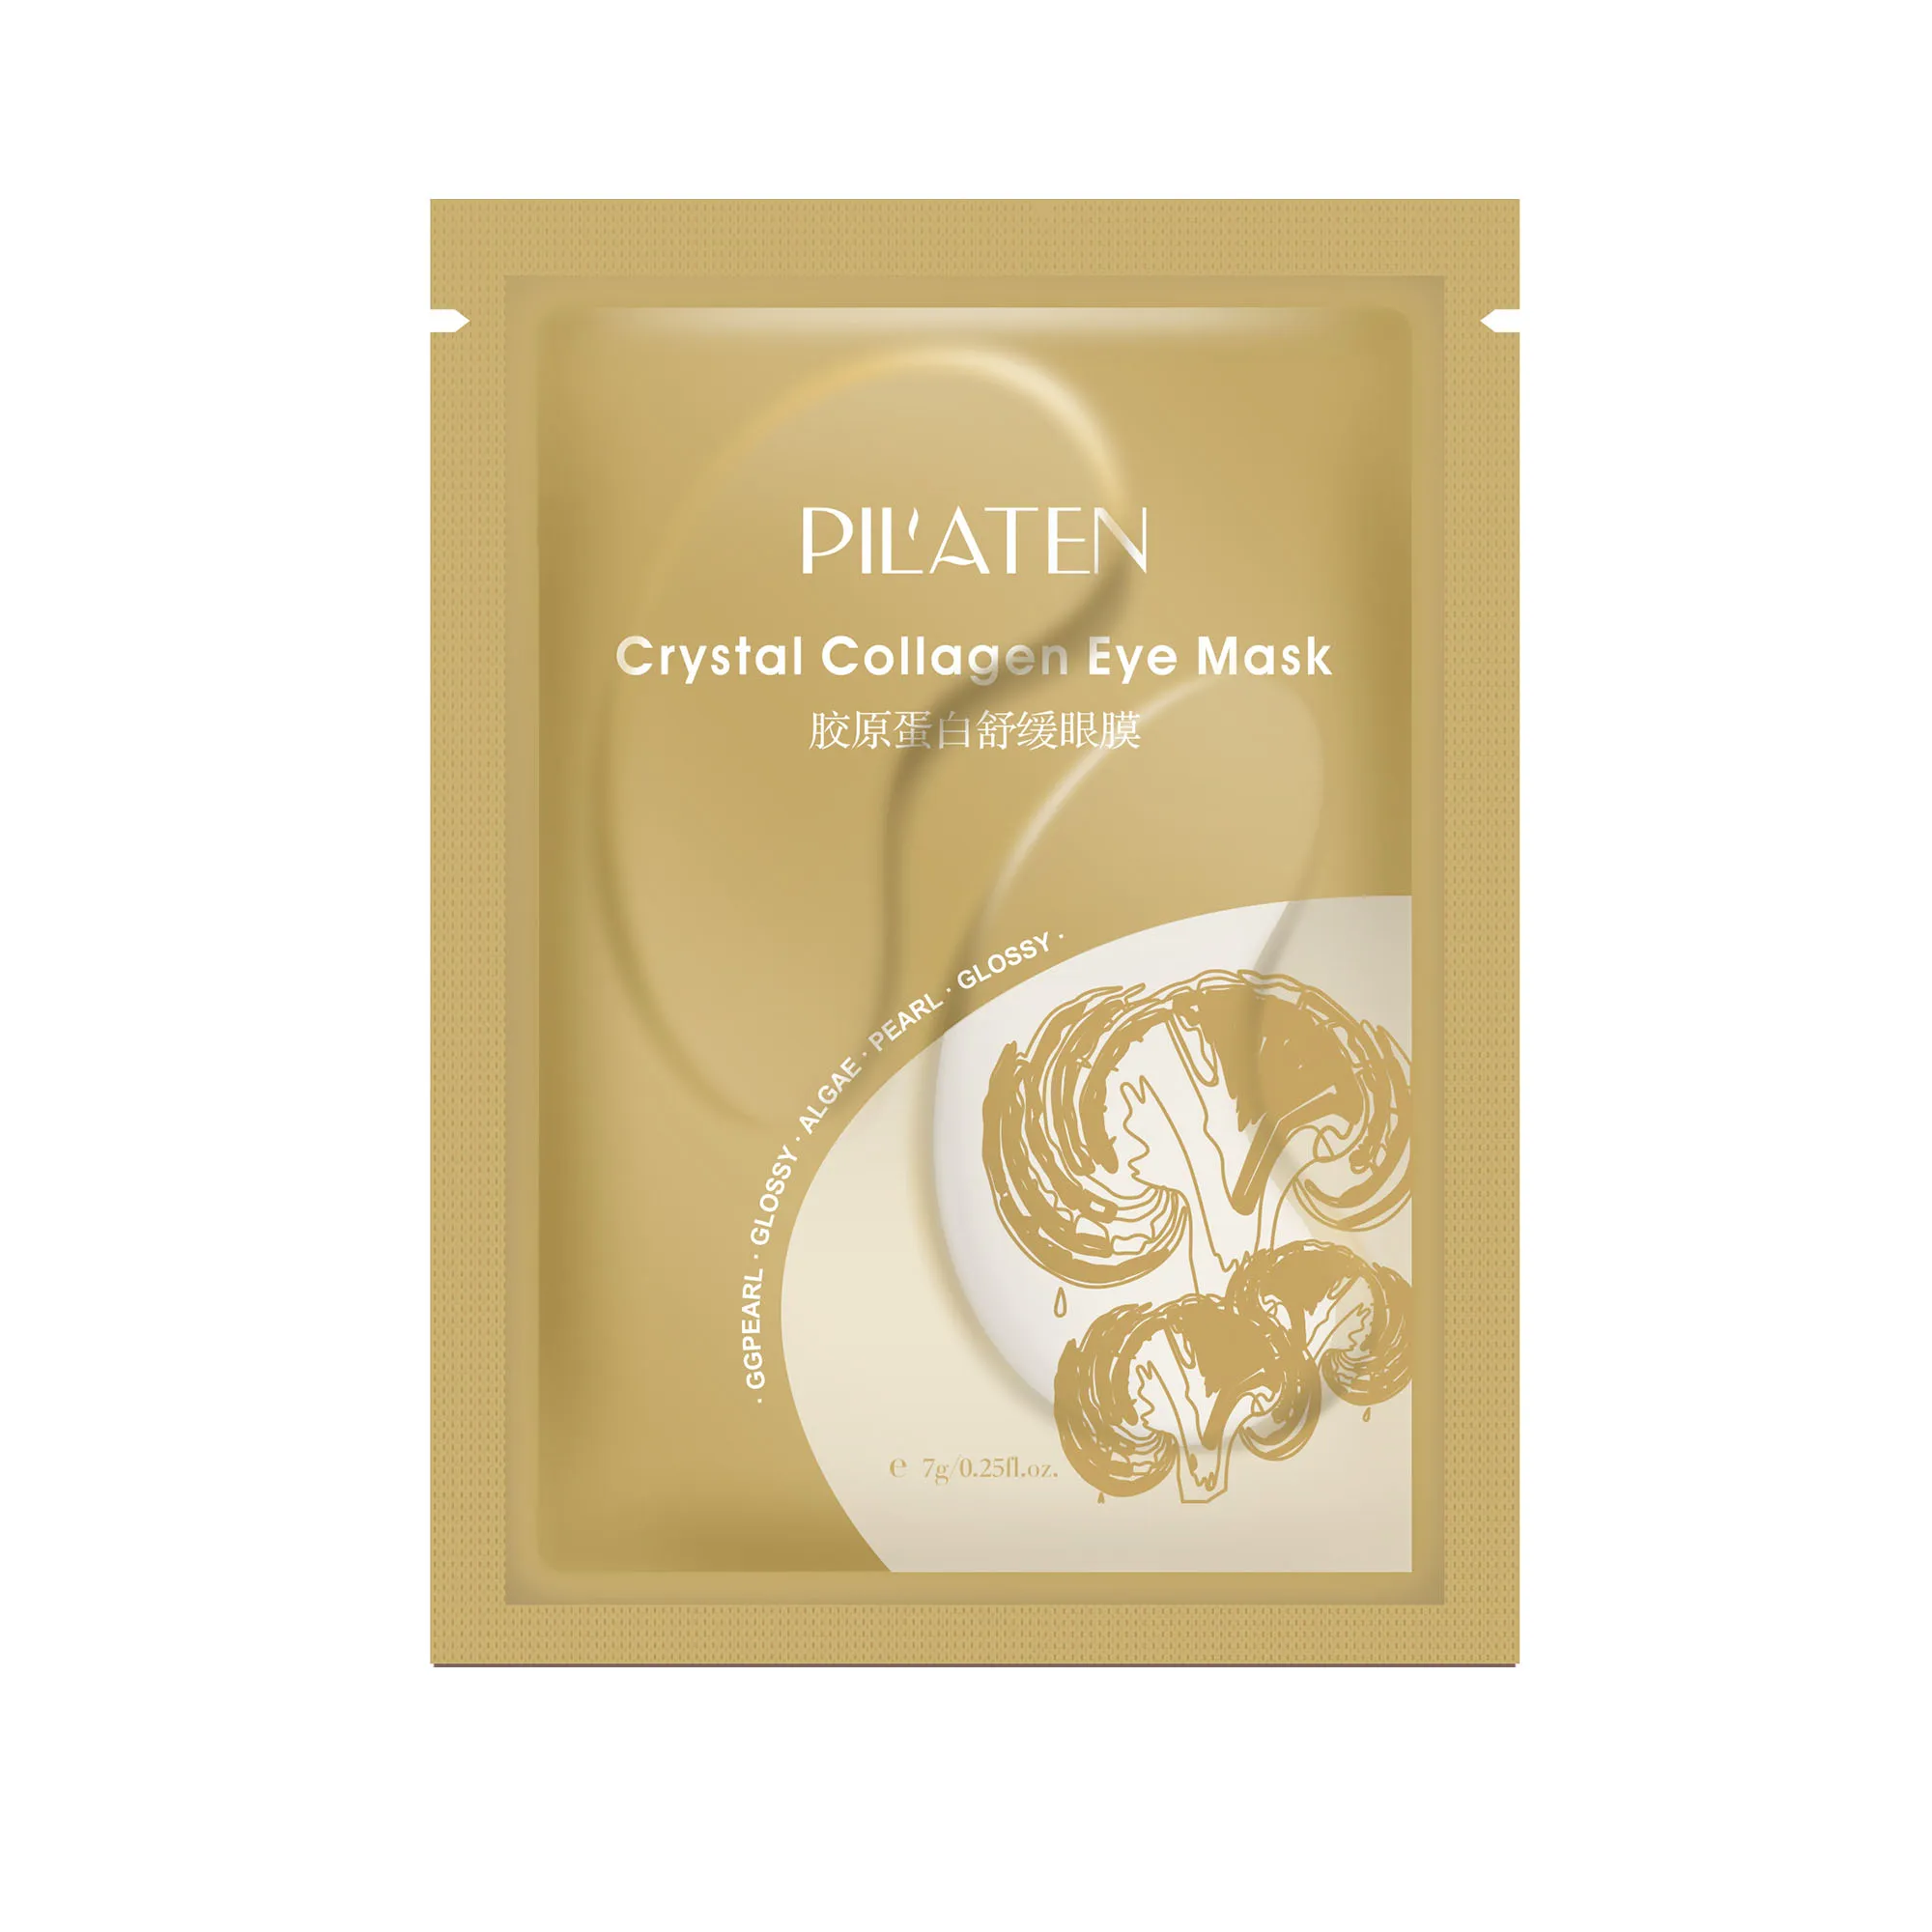 Pilaten Crystal Collagen Eye Mask Kolagenowe płatki pod oczy, 7 g